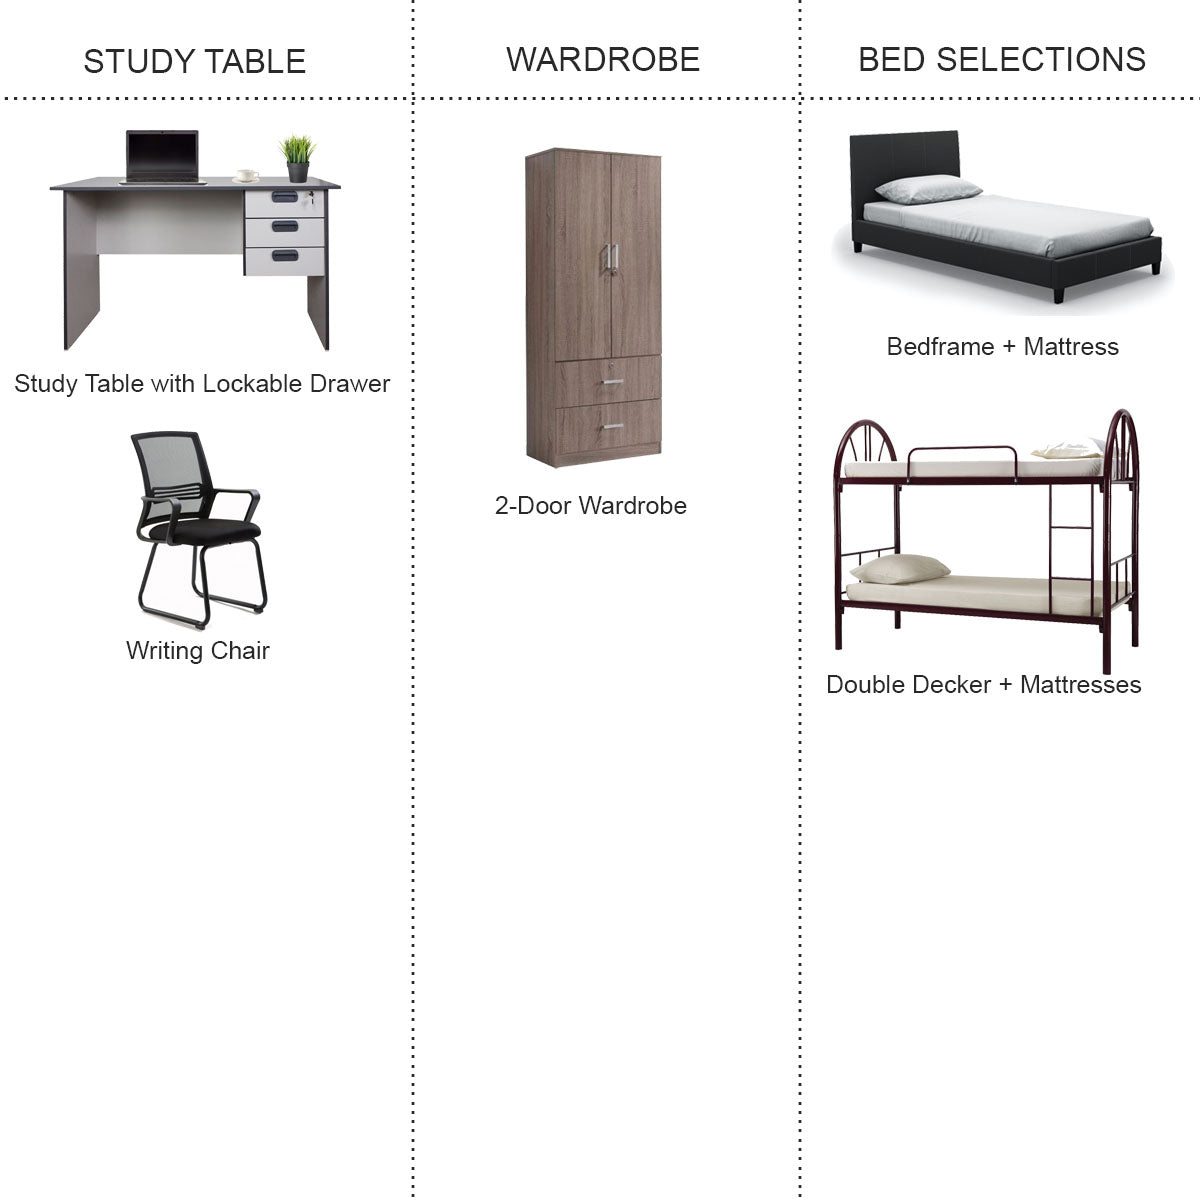 Higher Standard Package Furniture Rental Package Homebulous